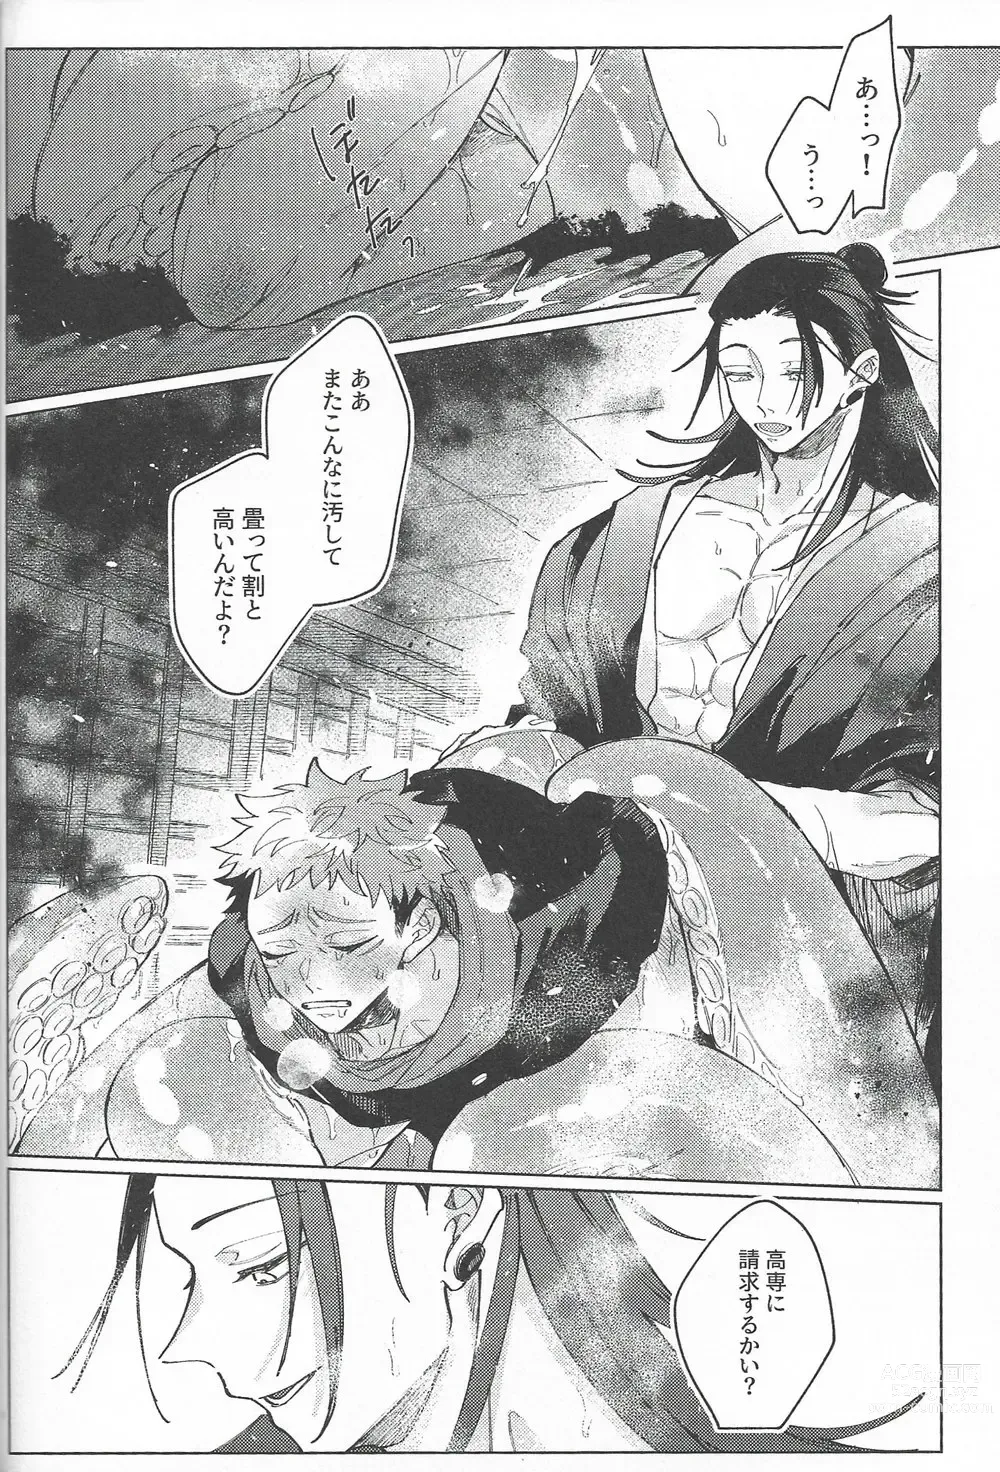 Page 61 of doujinshi Rakuen no Niwa